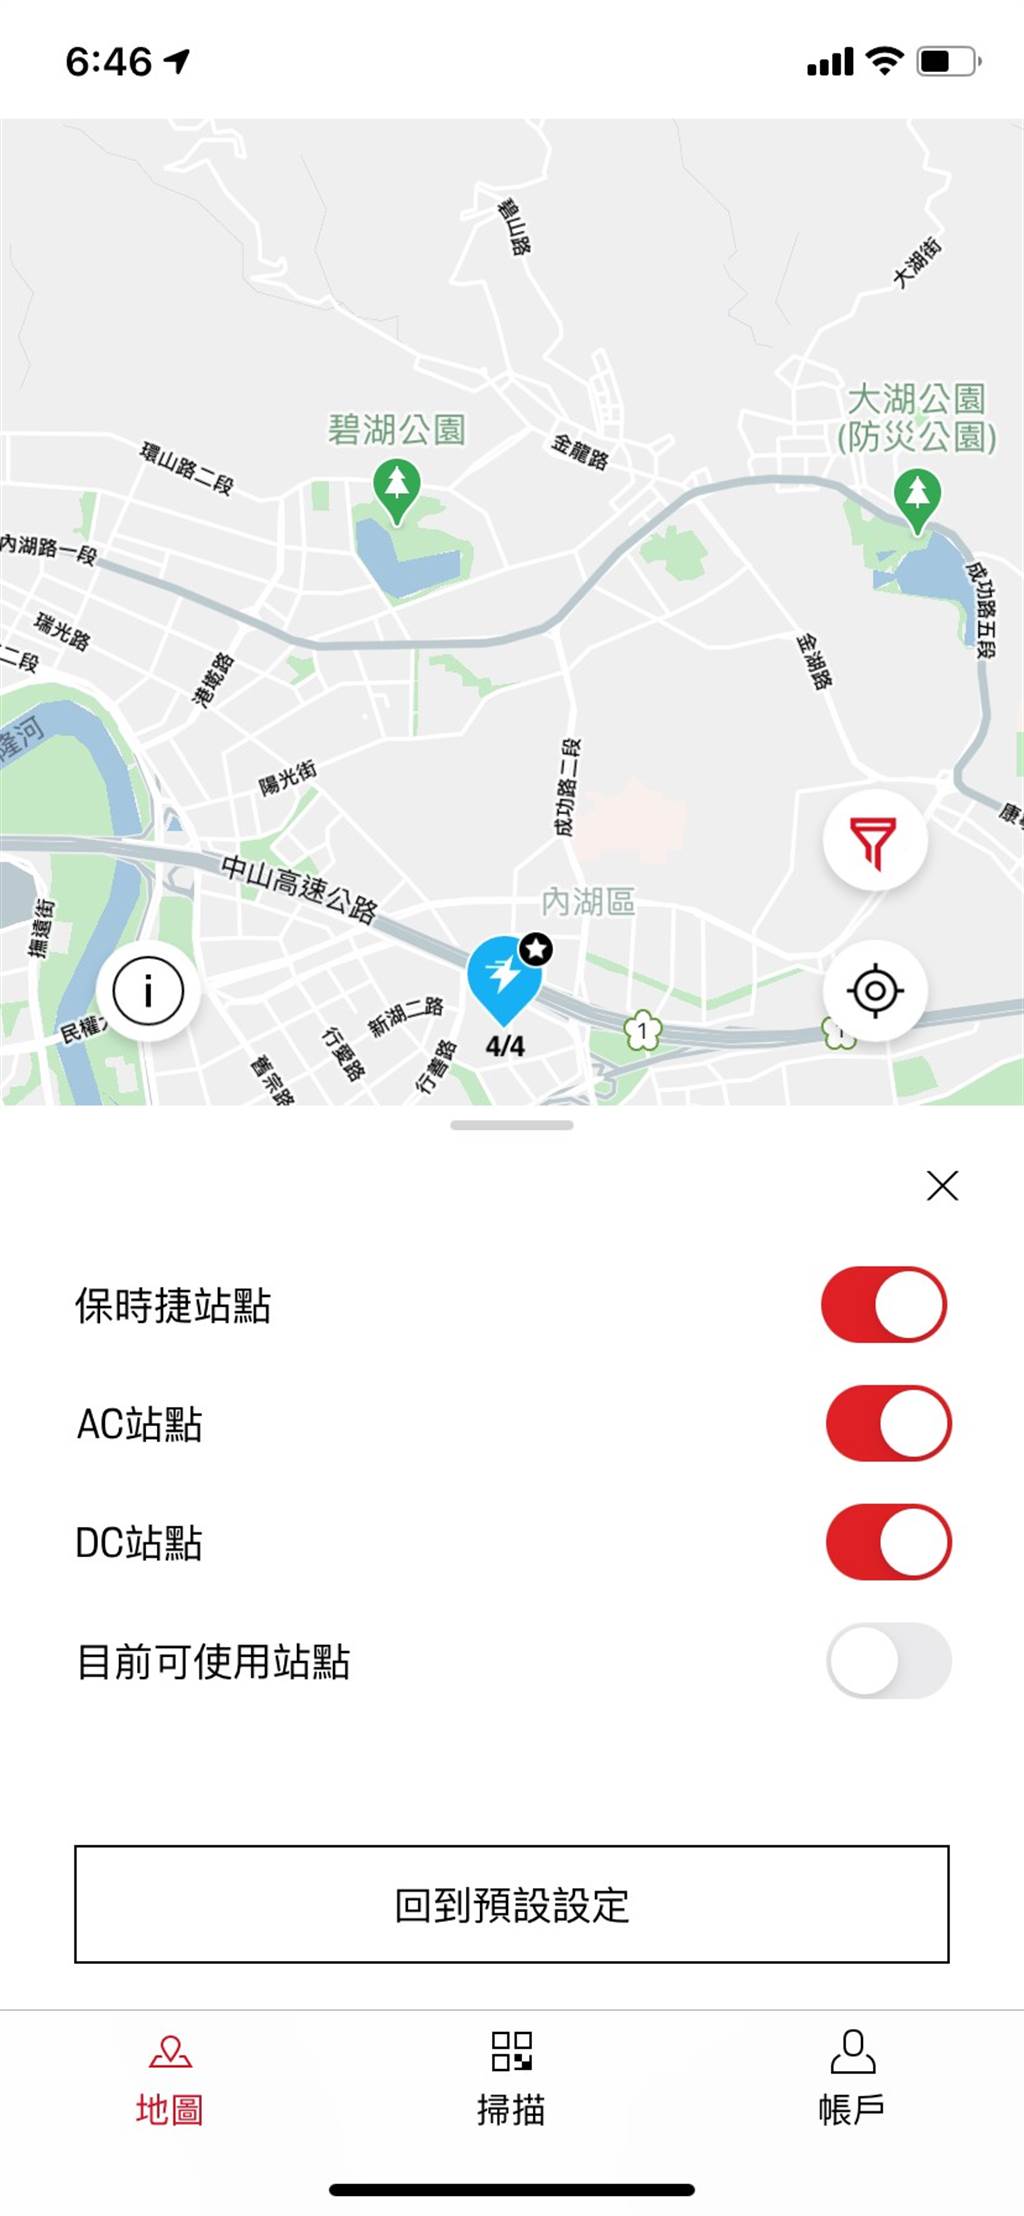 為 Taycan 設計，台灣保時捷推出專屬充電服務App
